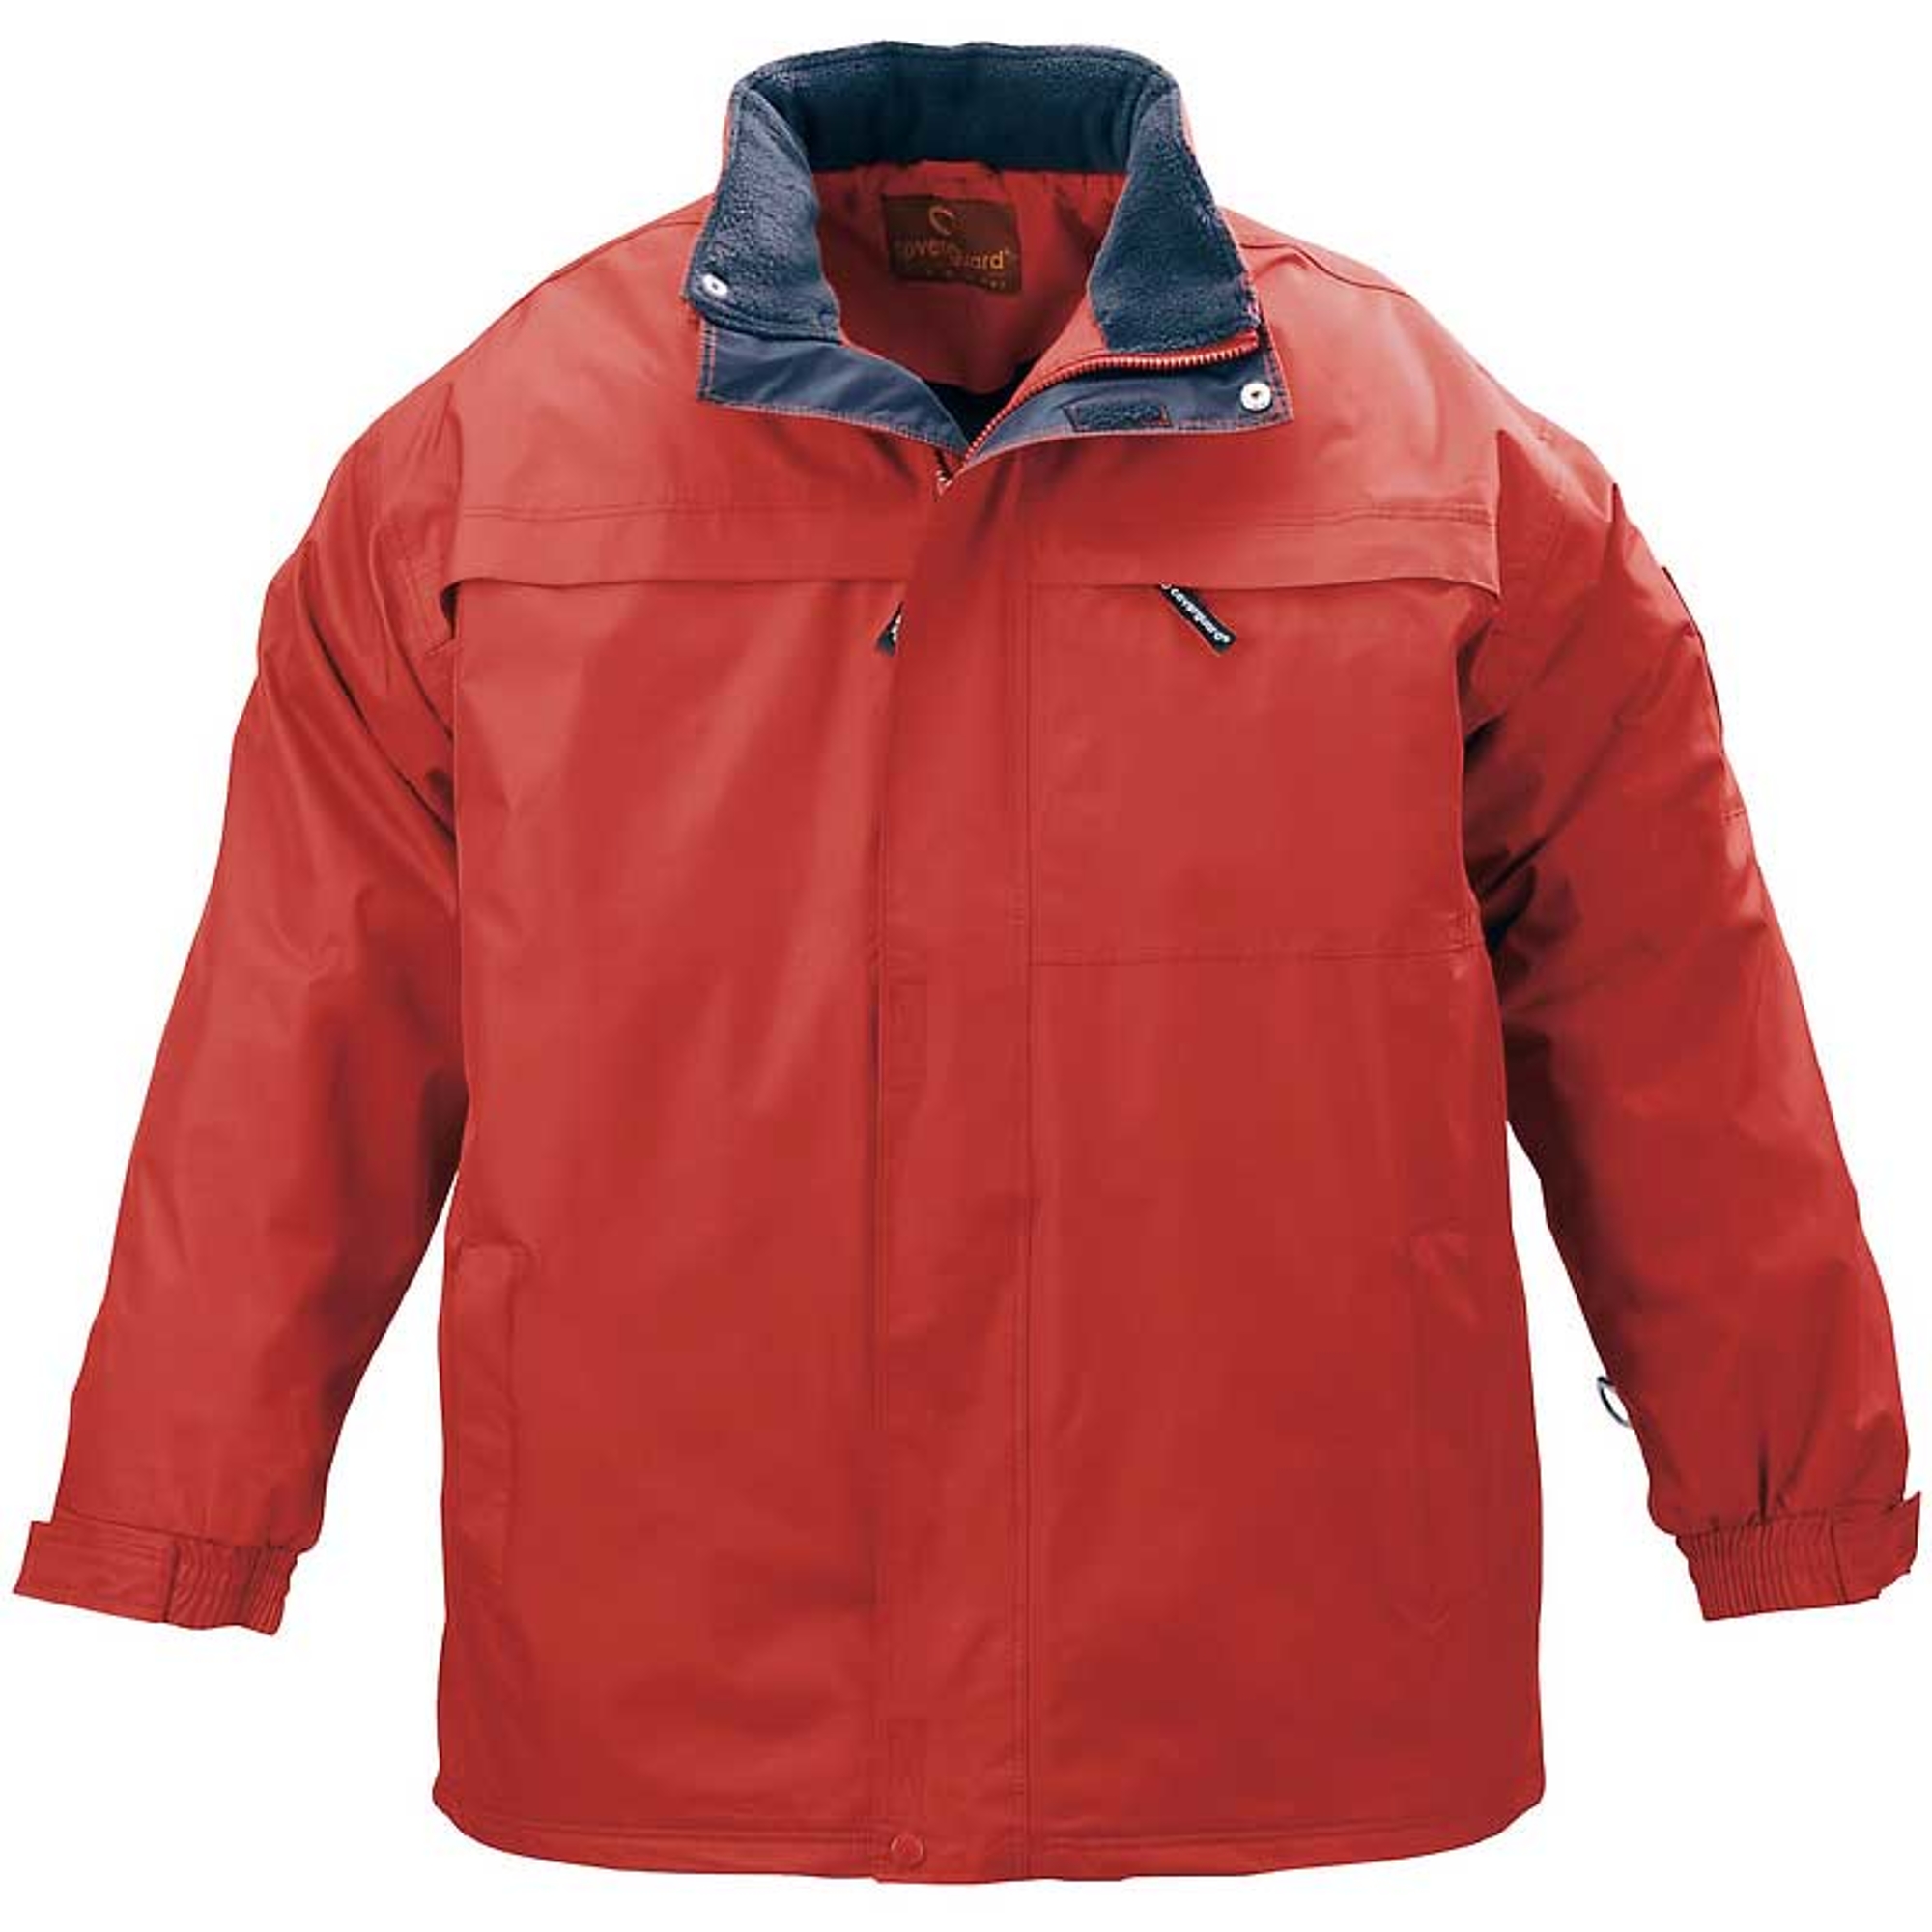 Pole-nord piros bélelt kabát